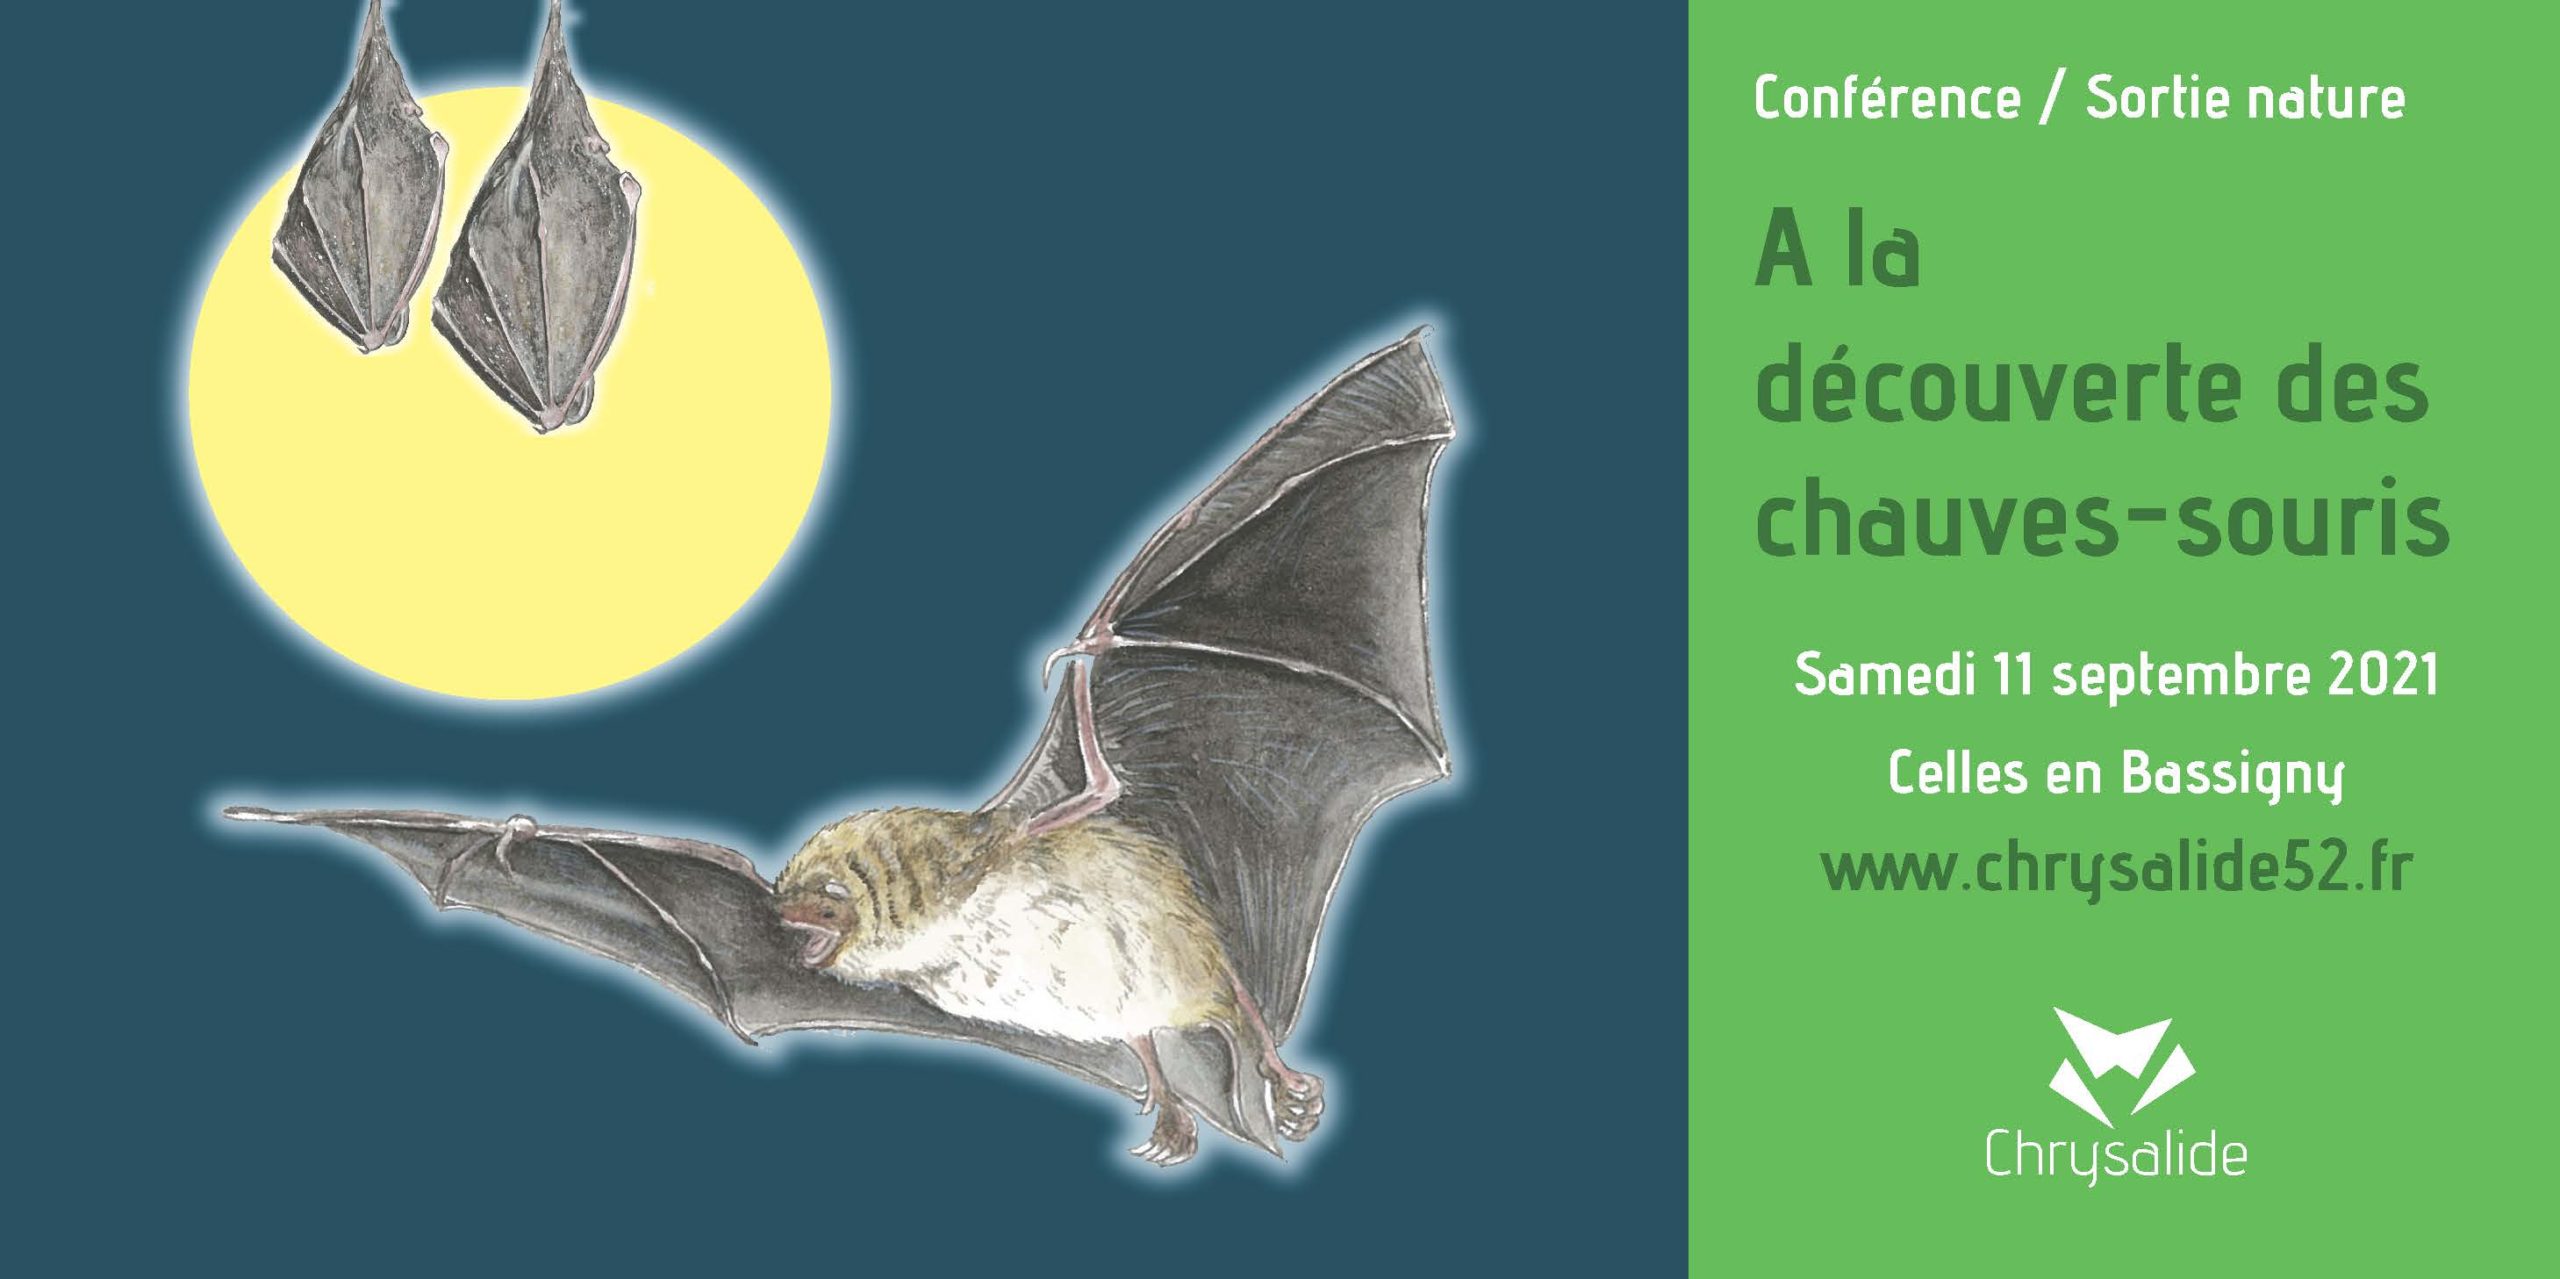 Conférence - Sortie nature - A la découverte des chauves-souris- Chrysalide52 - Michael Geber - Haute-Marne